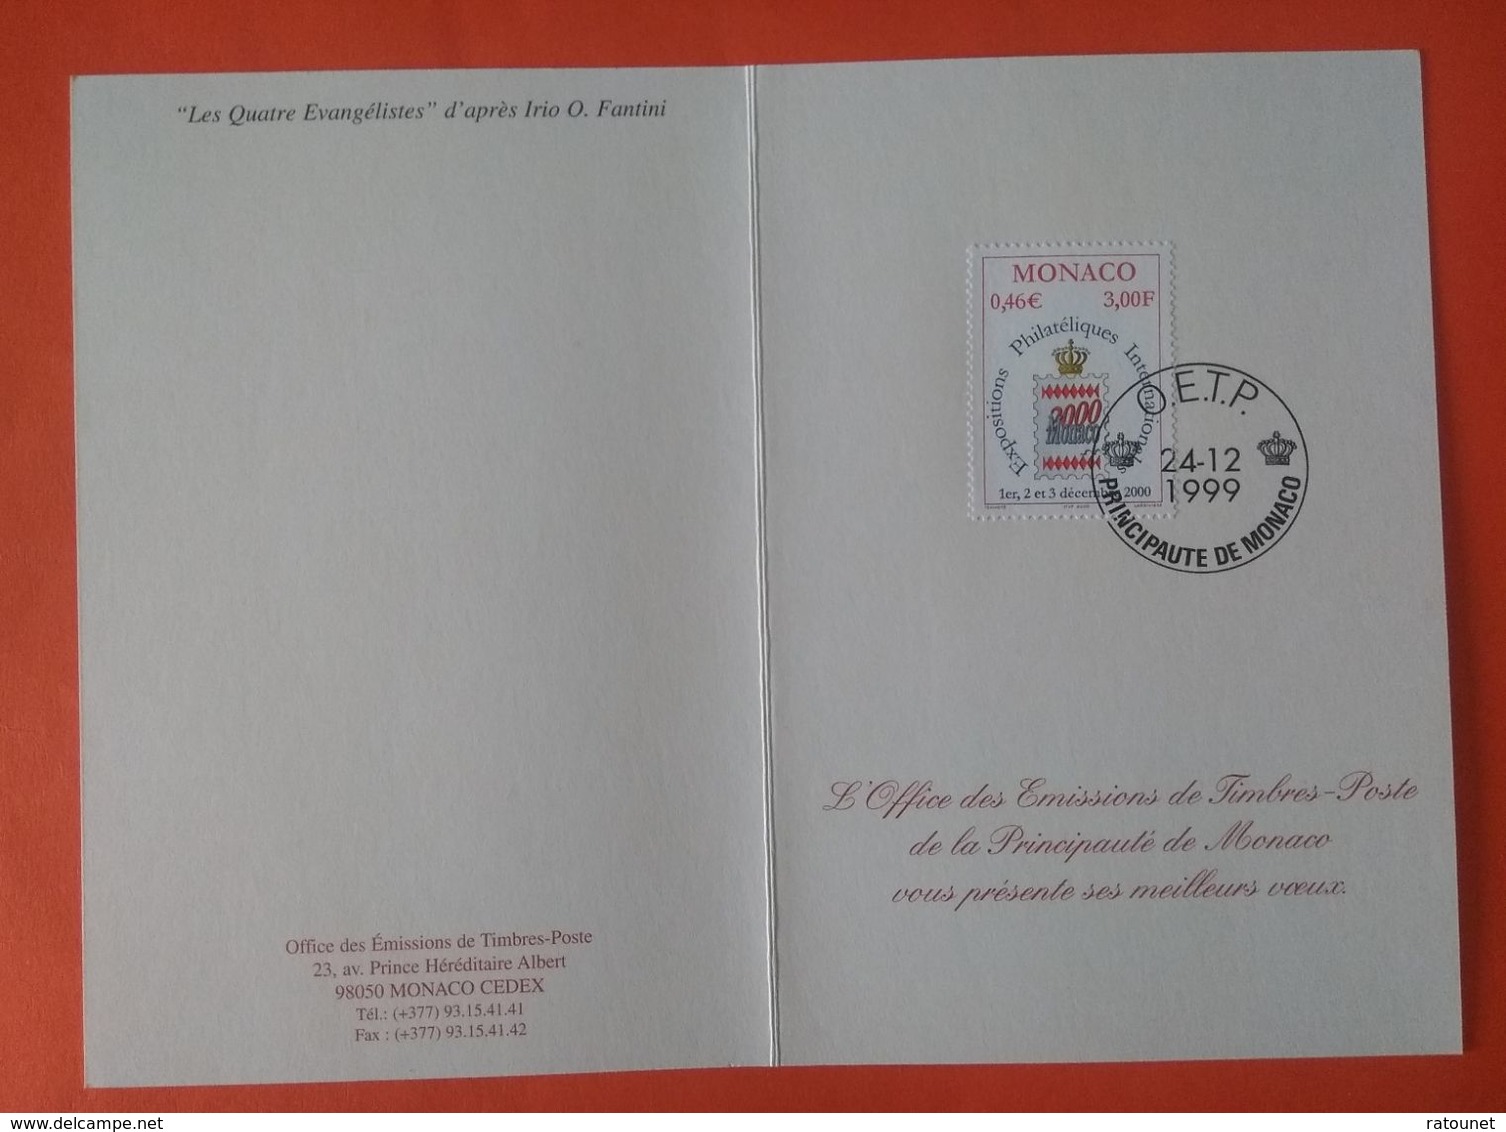 MONACO 1999 -   YT 2229 - Monaco 2000 - Expositions Philatéliques Internationales + Les Quatres Evangélistes (Fantini) - Briefe U. Dokumente